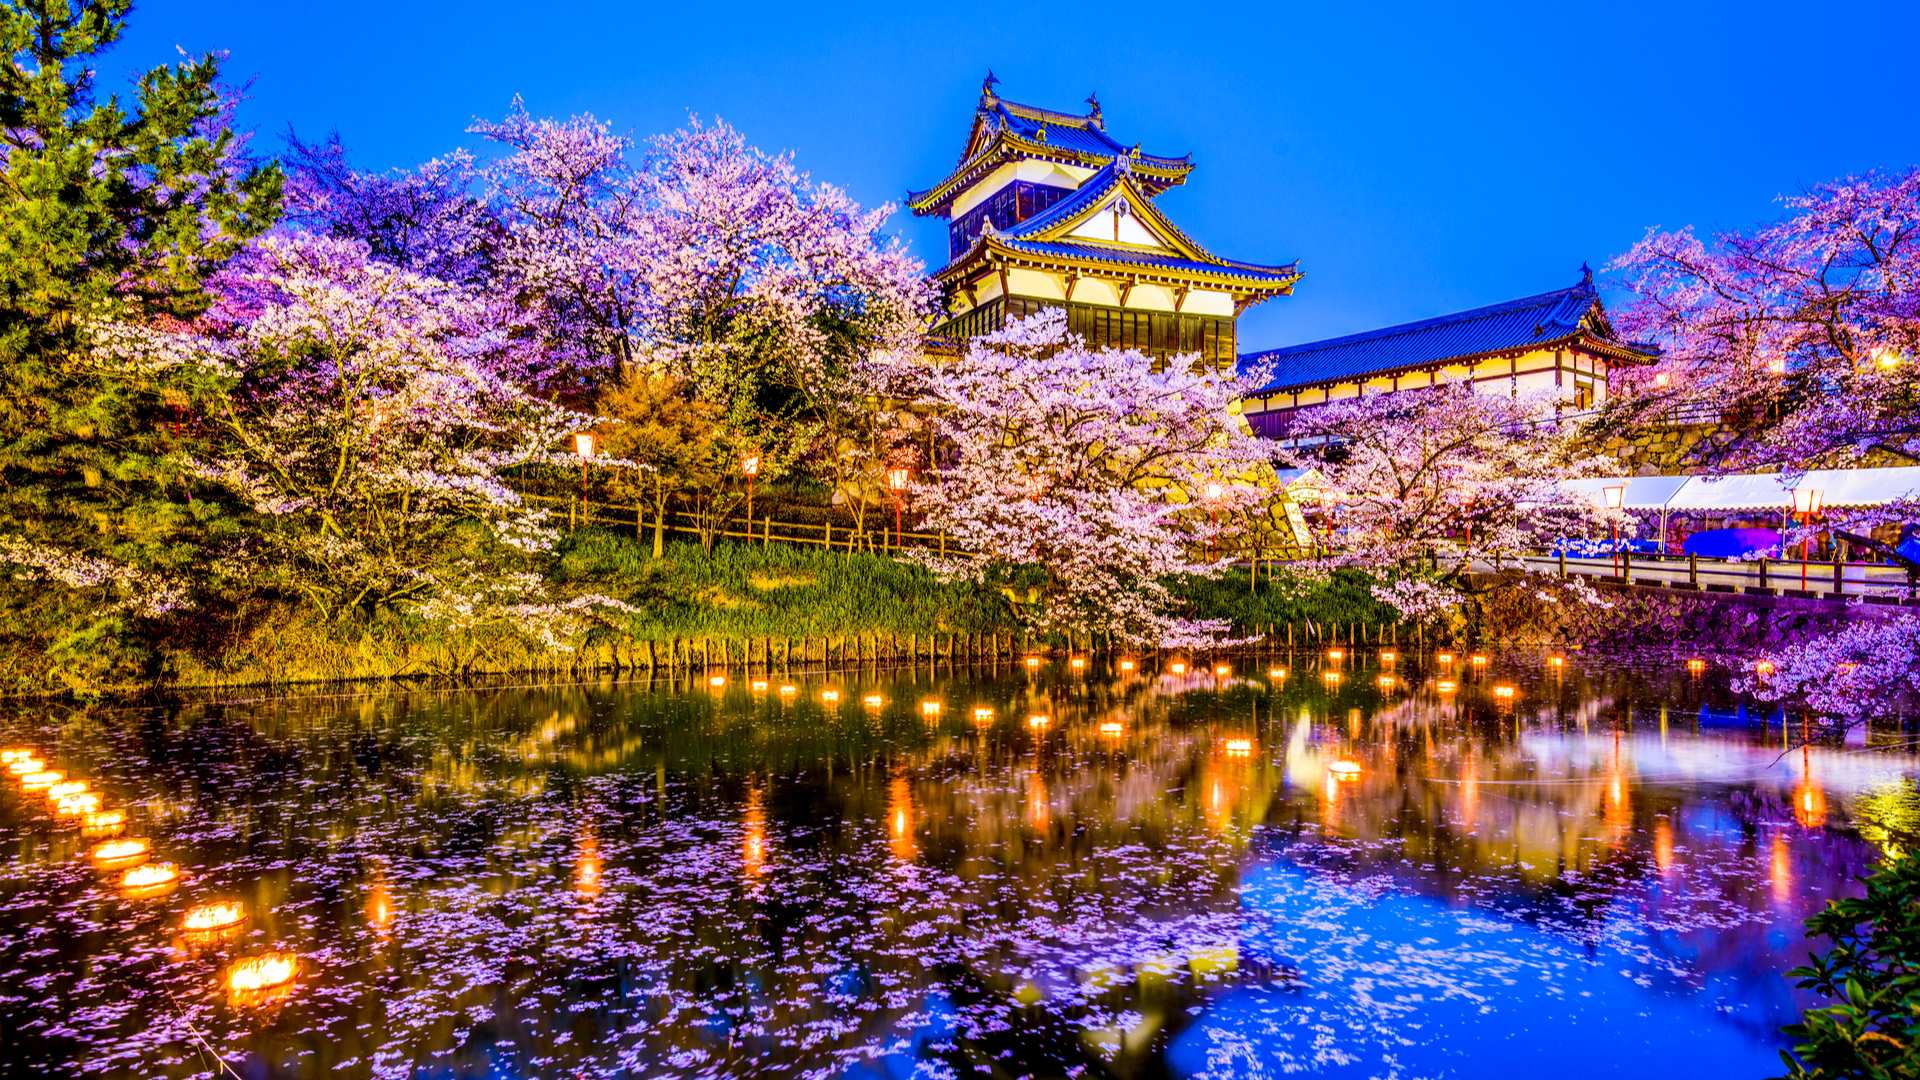 日本中の名城を求めて ツウなら知ってる 城旅 の味わい方 Trip Editor